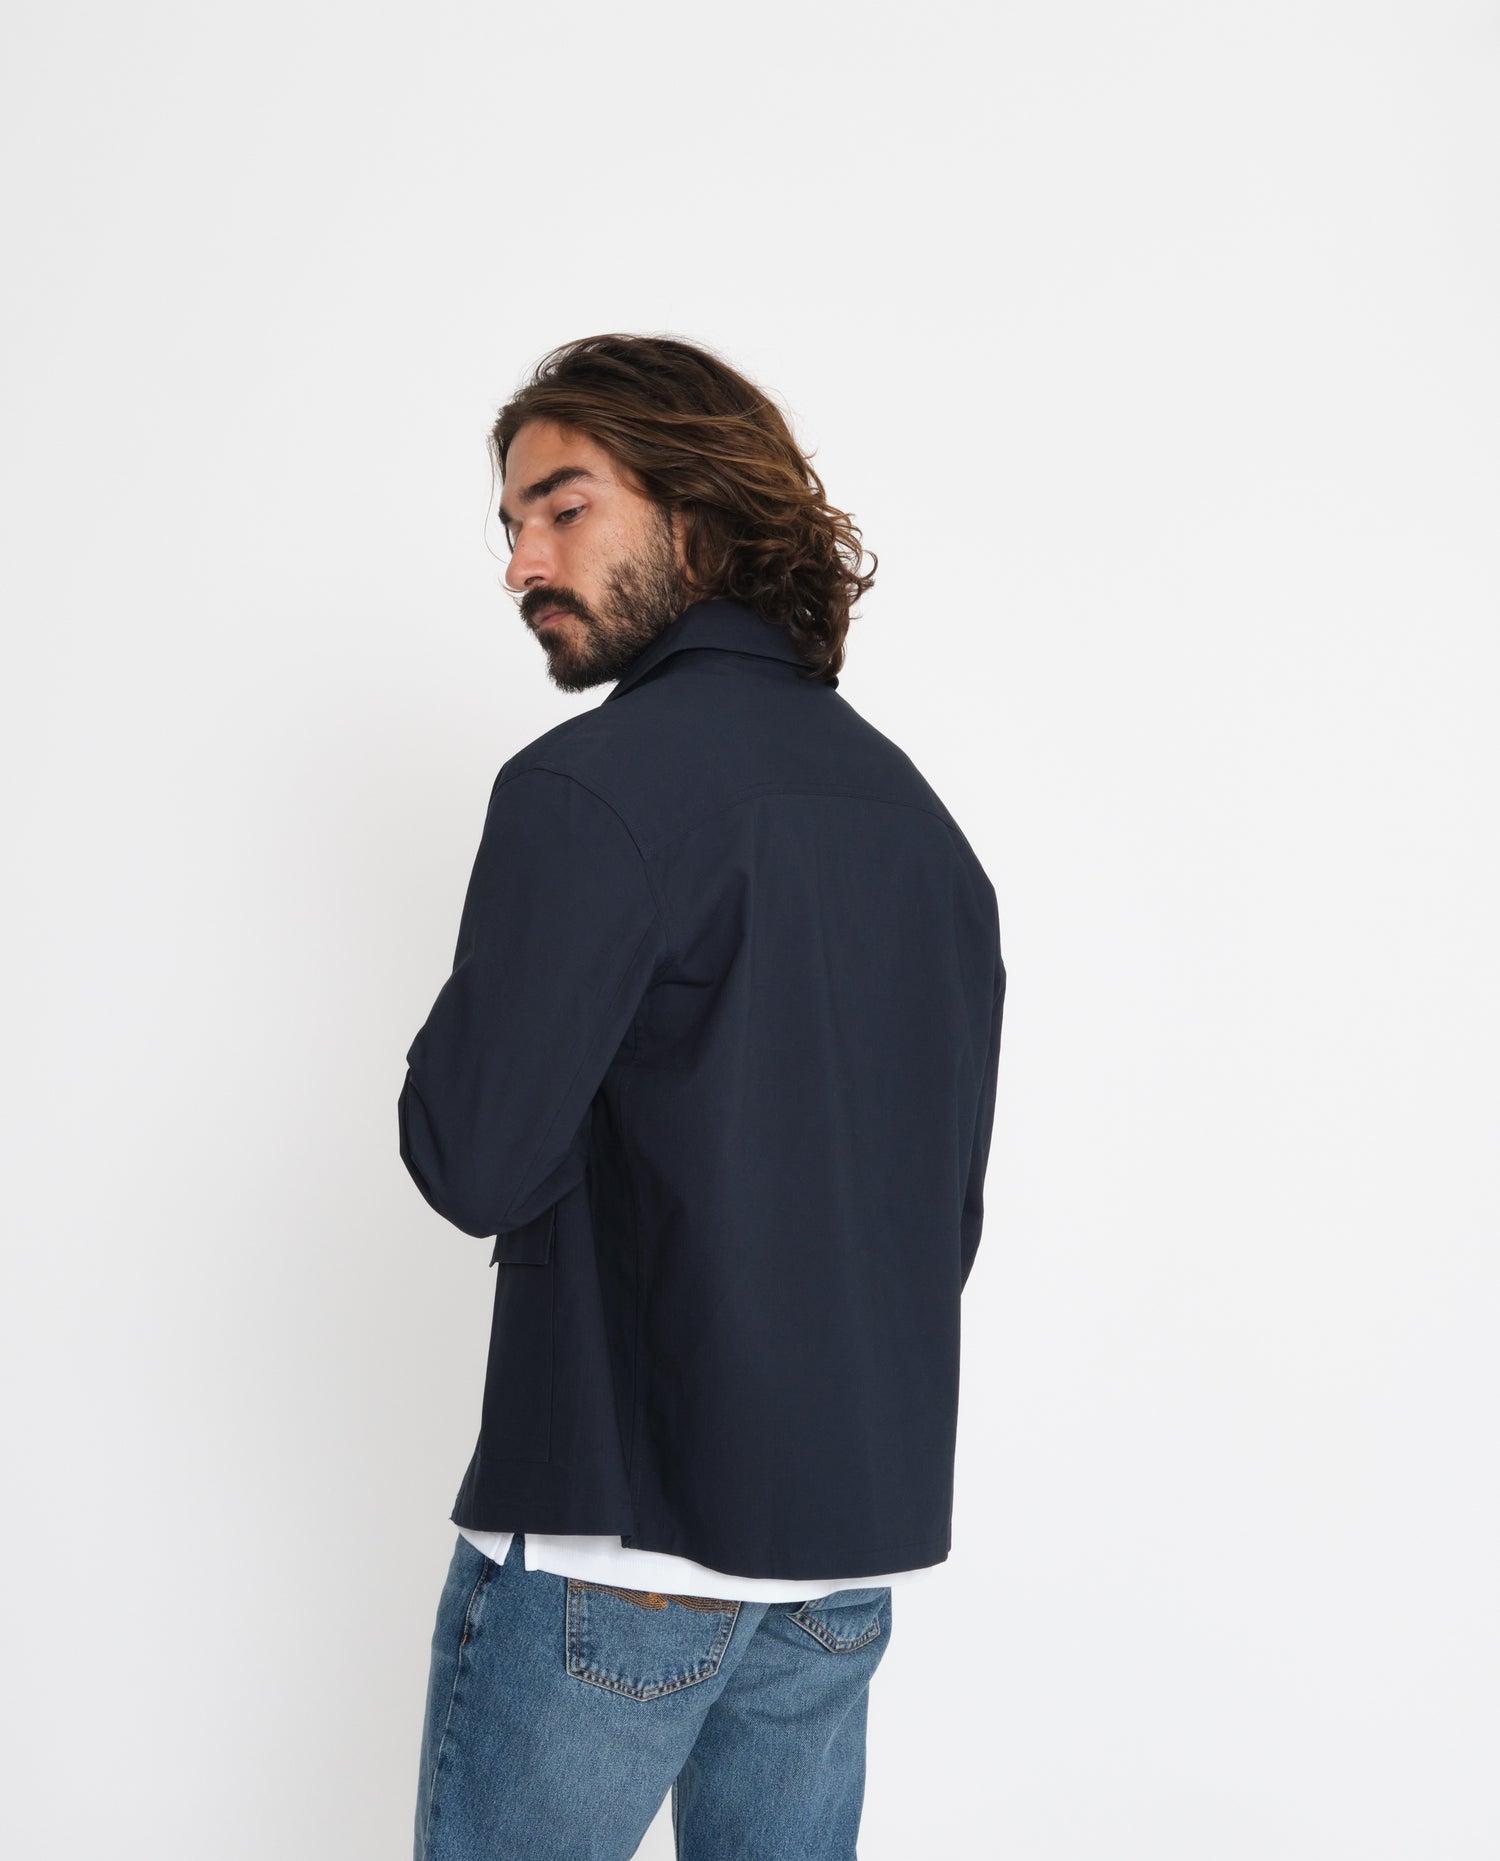 marché commun rotholz veste homme courte coton biologique éco-responsable éthique fabriquée en Europe bleu marine